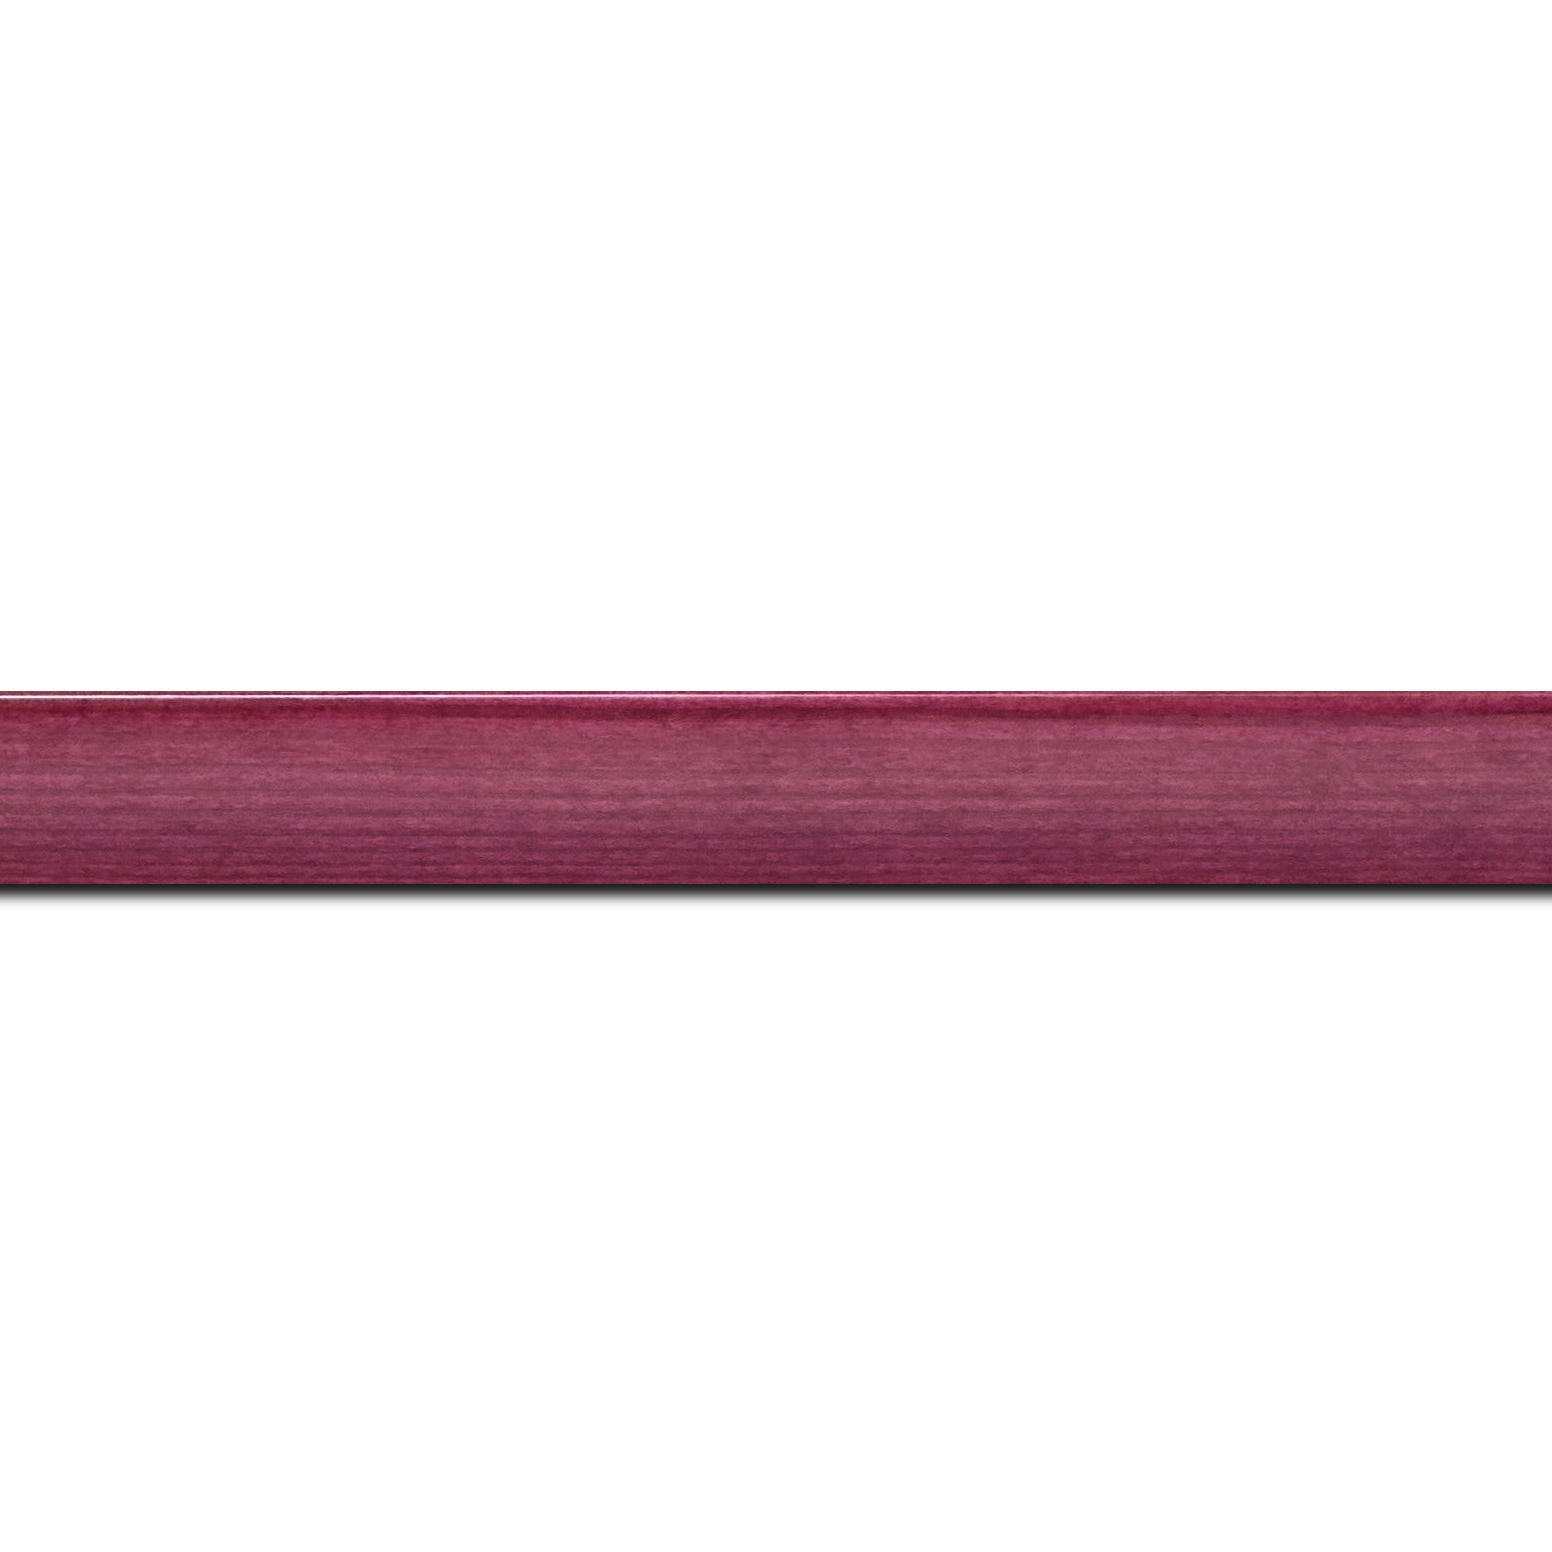 Baguette longueur 1.40m bois profil arrondi en pente plongeant largeur 2.4cm couleur rose fushia  finition vernis brillant,veine du bois  apparent (pin) ,